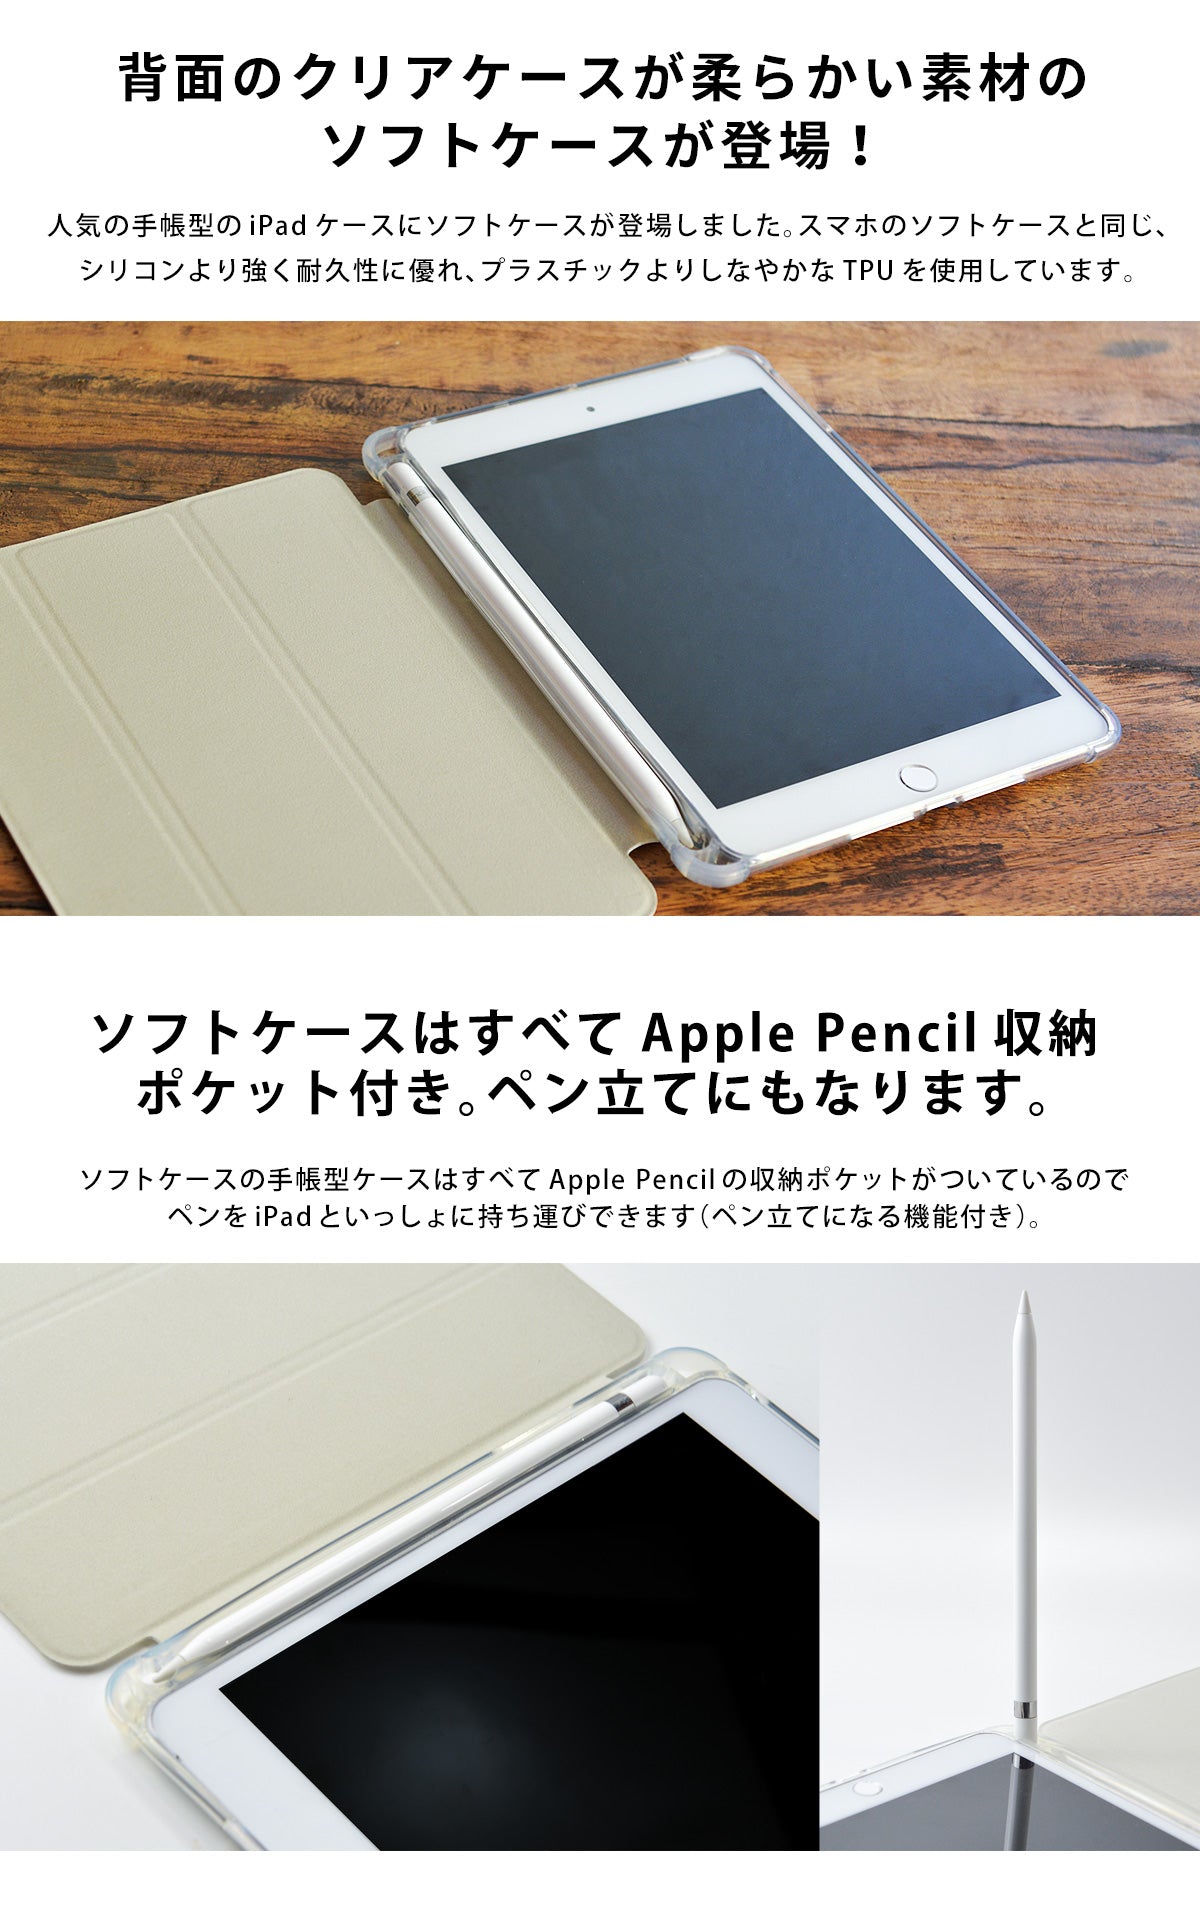 iPad Air2 Air1 iPad 9.7インチ ソフトカバー - iPadアクセサリー